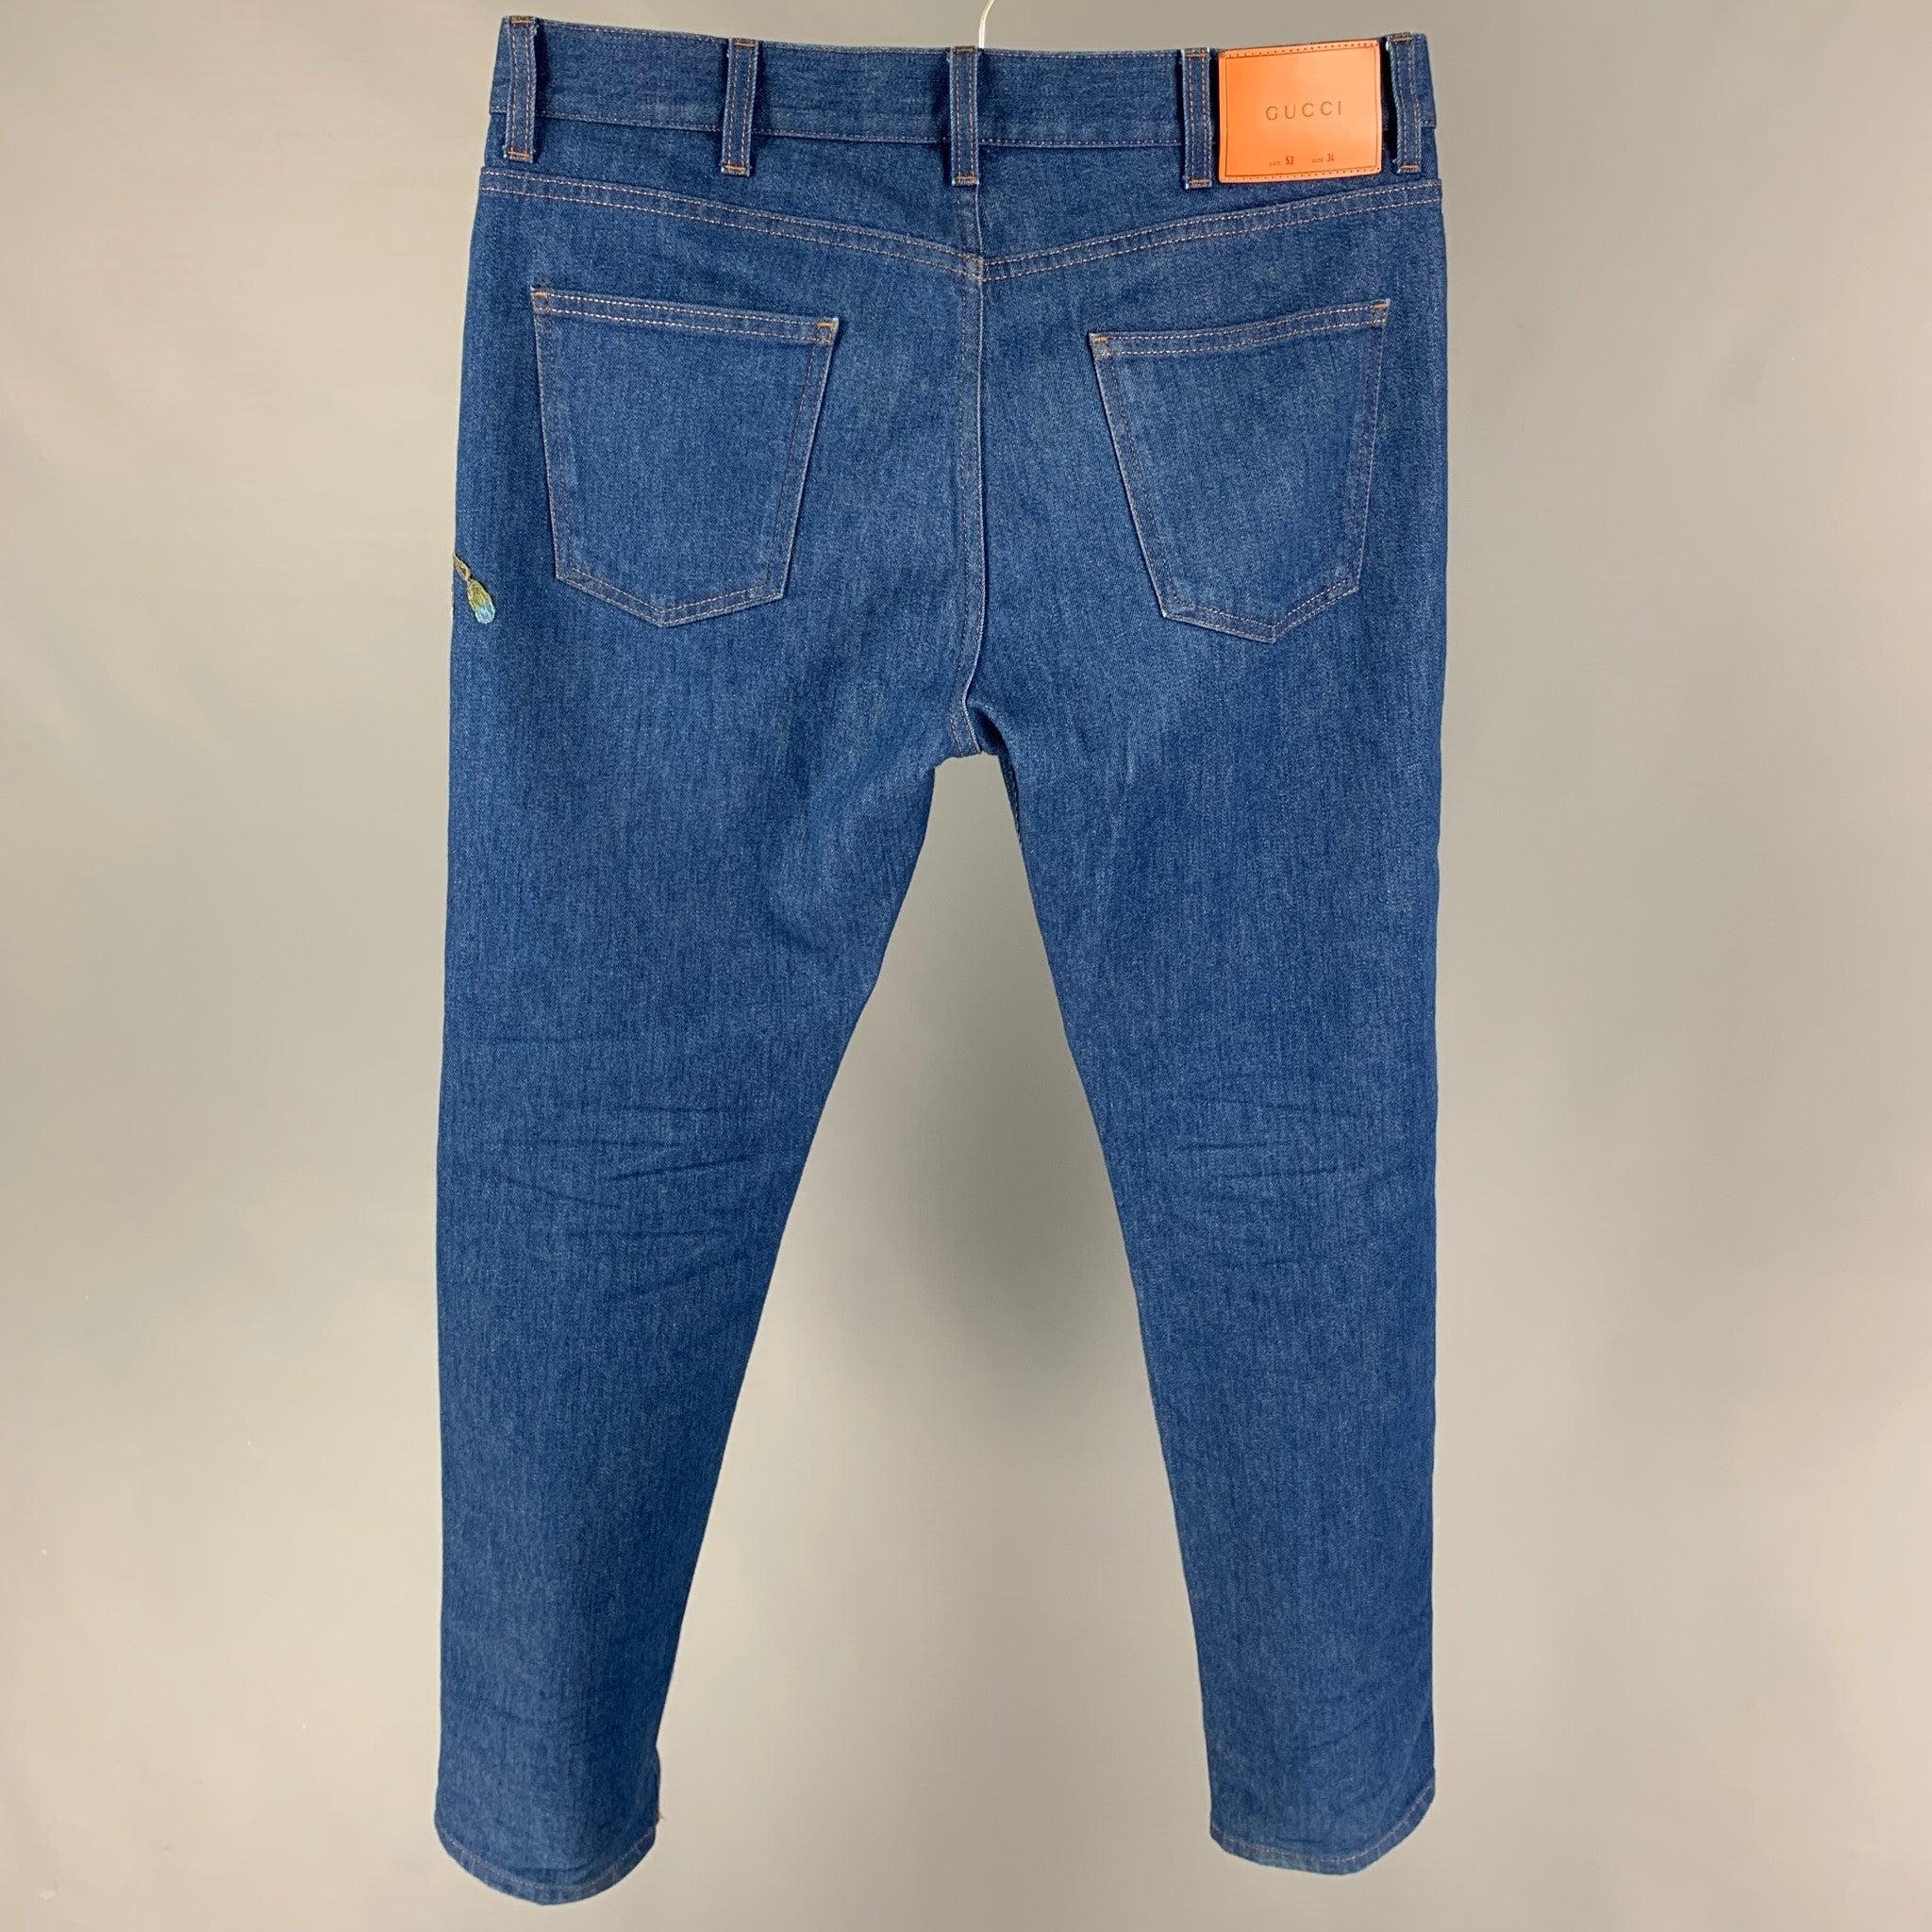 Blaue Denim-Jeans mit mehrfarbiger Stickerei von GUCCI in gerader Größe 34 Herren im Angebot